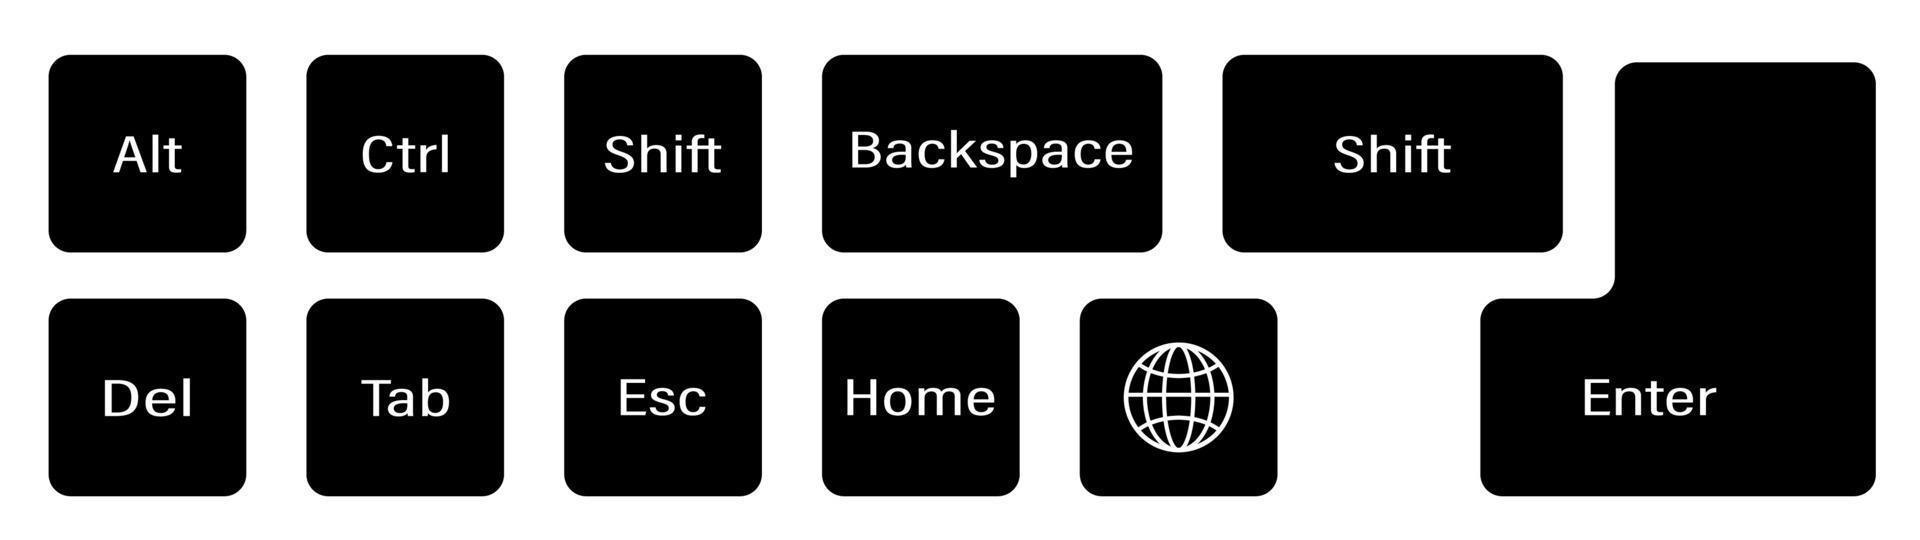 set di tasti della tastiera aggiuntivi su sfondo bianco. alt, ctrl, invio, backspace, esc, globo, shift. vettore isolato